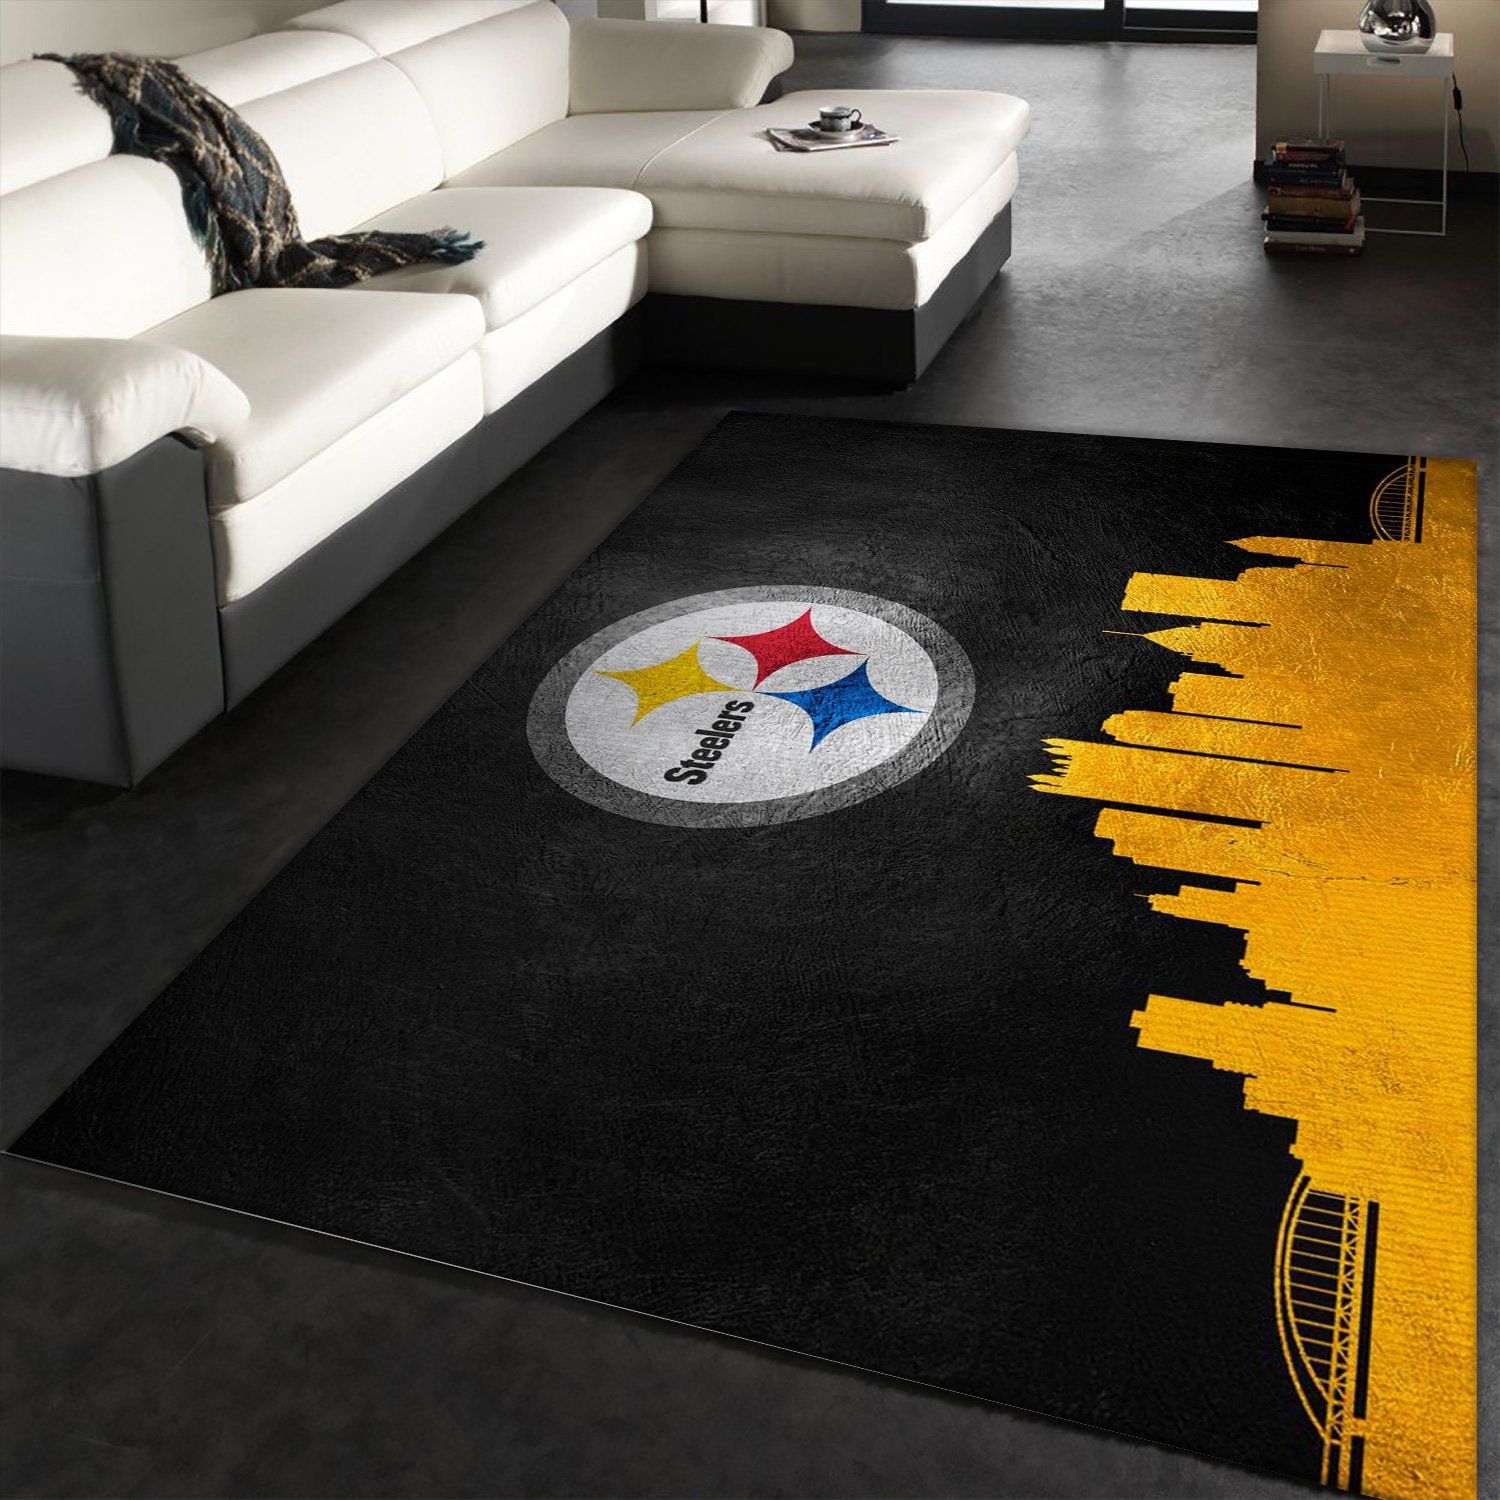 Pittsburgh Steelers Rugs Living Room Anti-Skid Area Rug Bedroom Floor Mat Carpet 